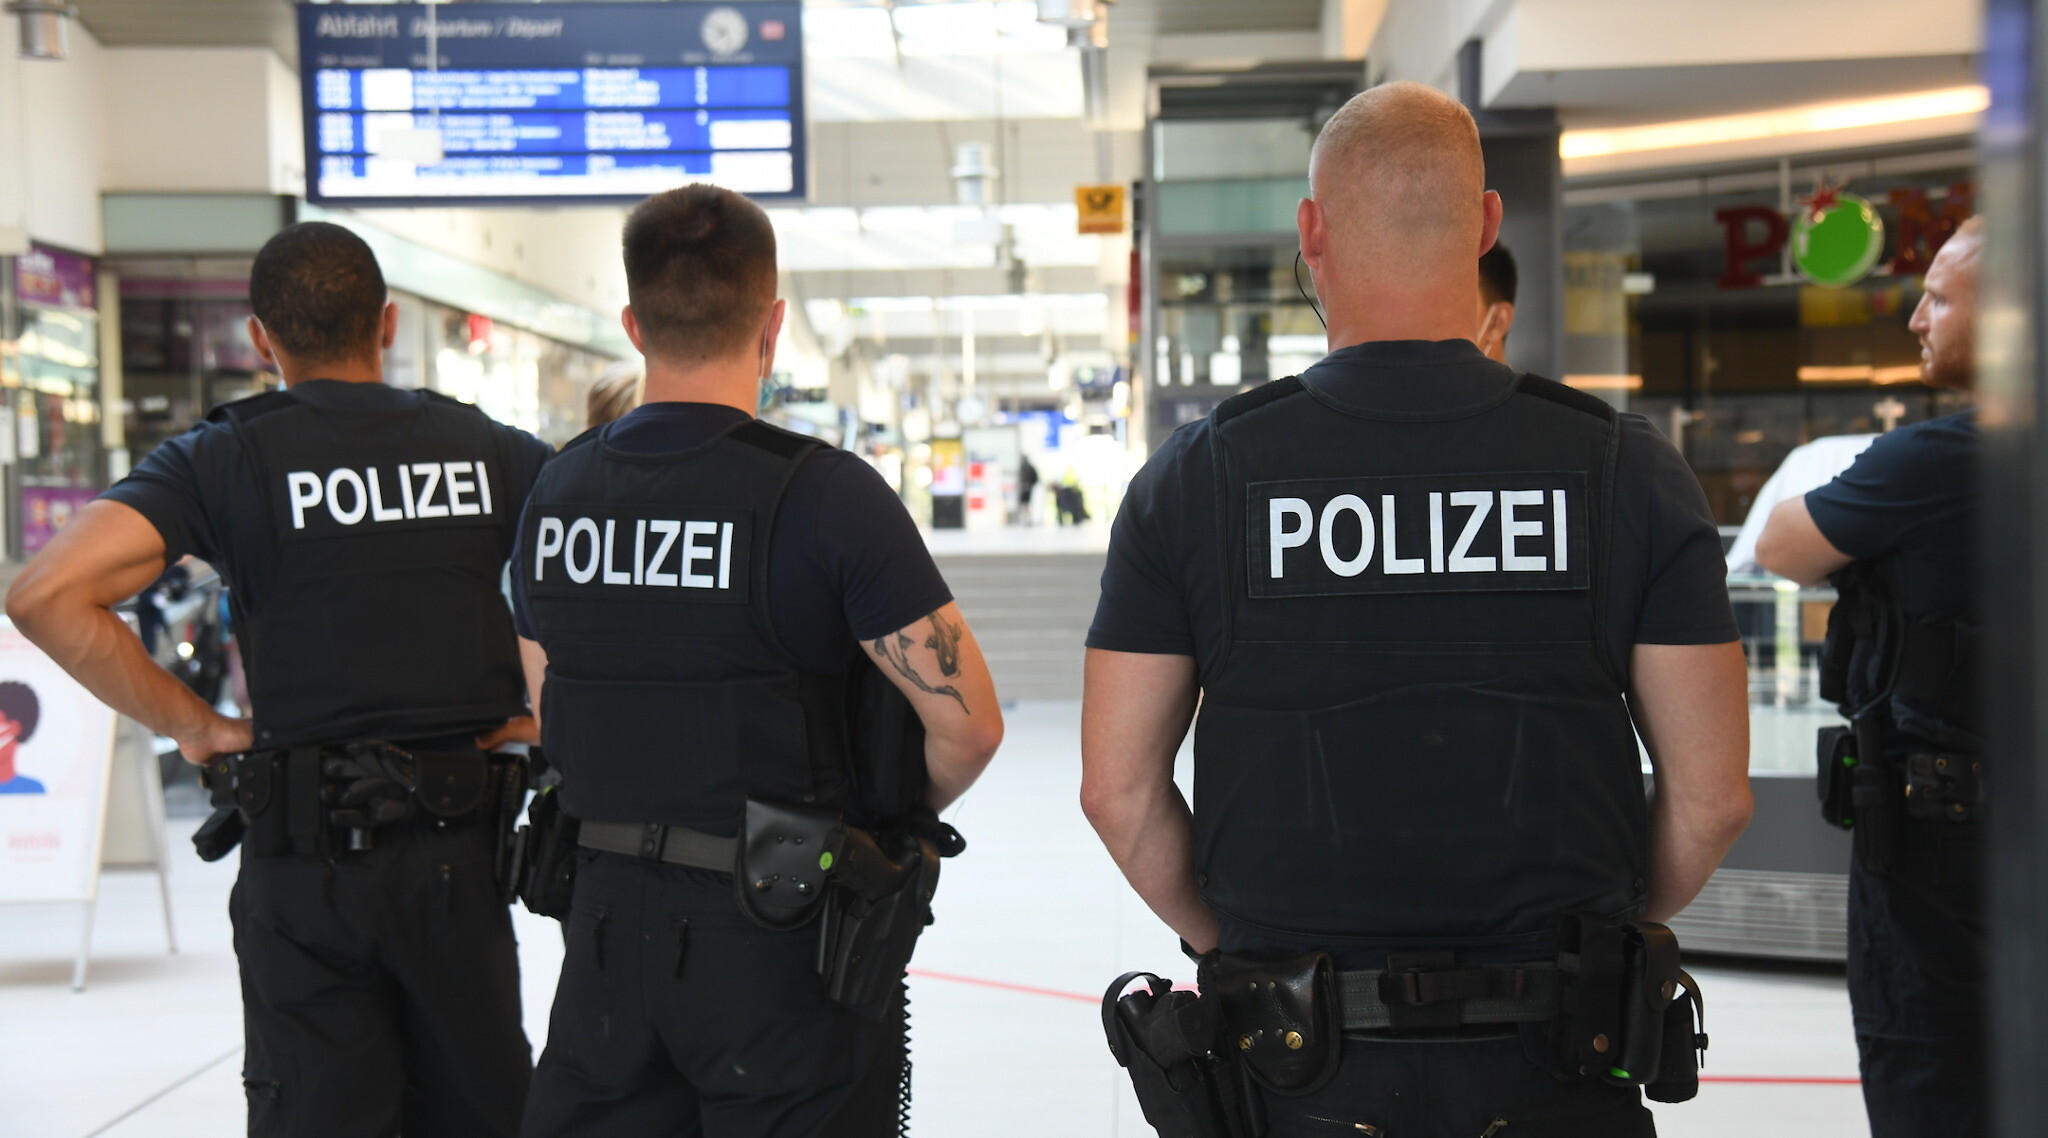 مكافحة الإرهاب في ألمانيا ـ جهود التصدي لمنشورات الكراهية